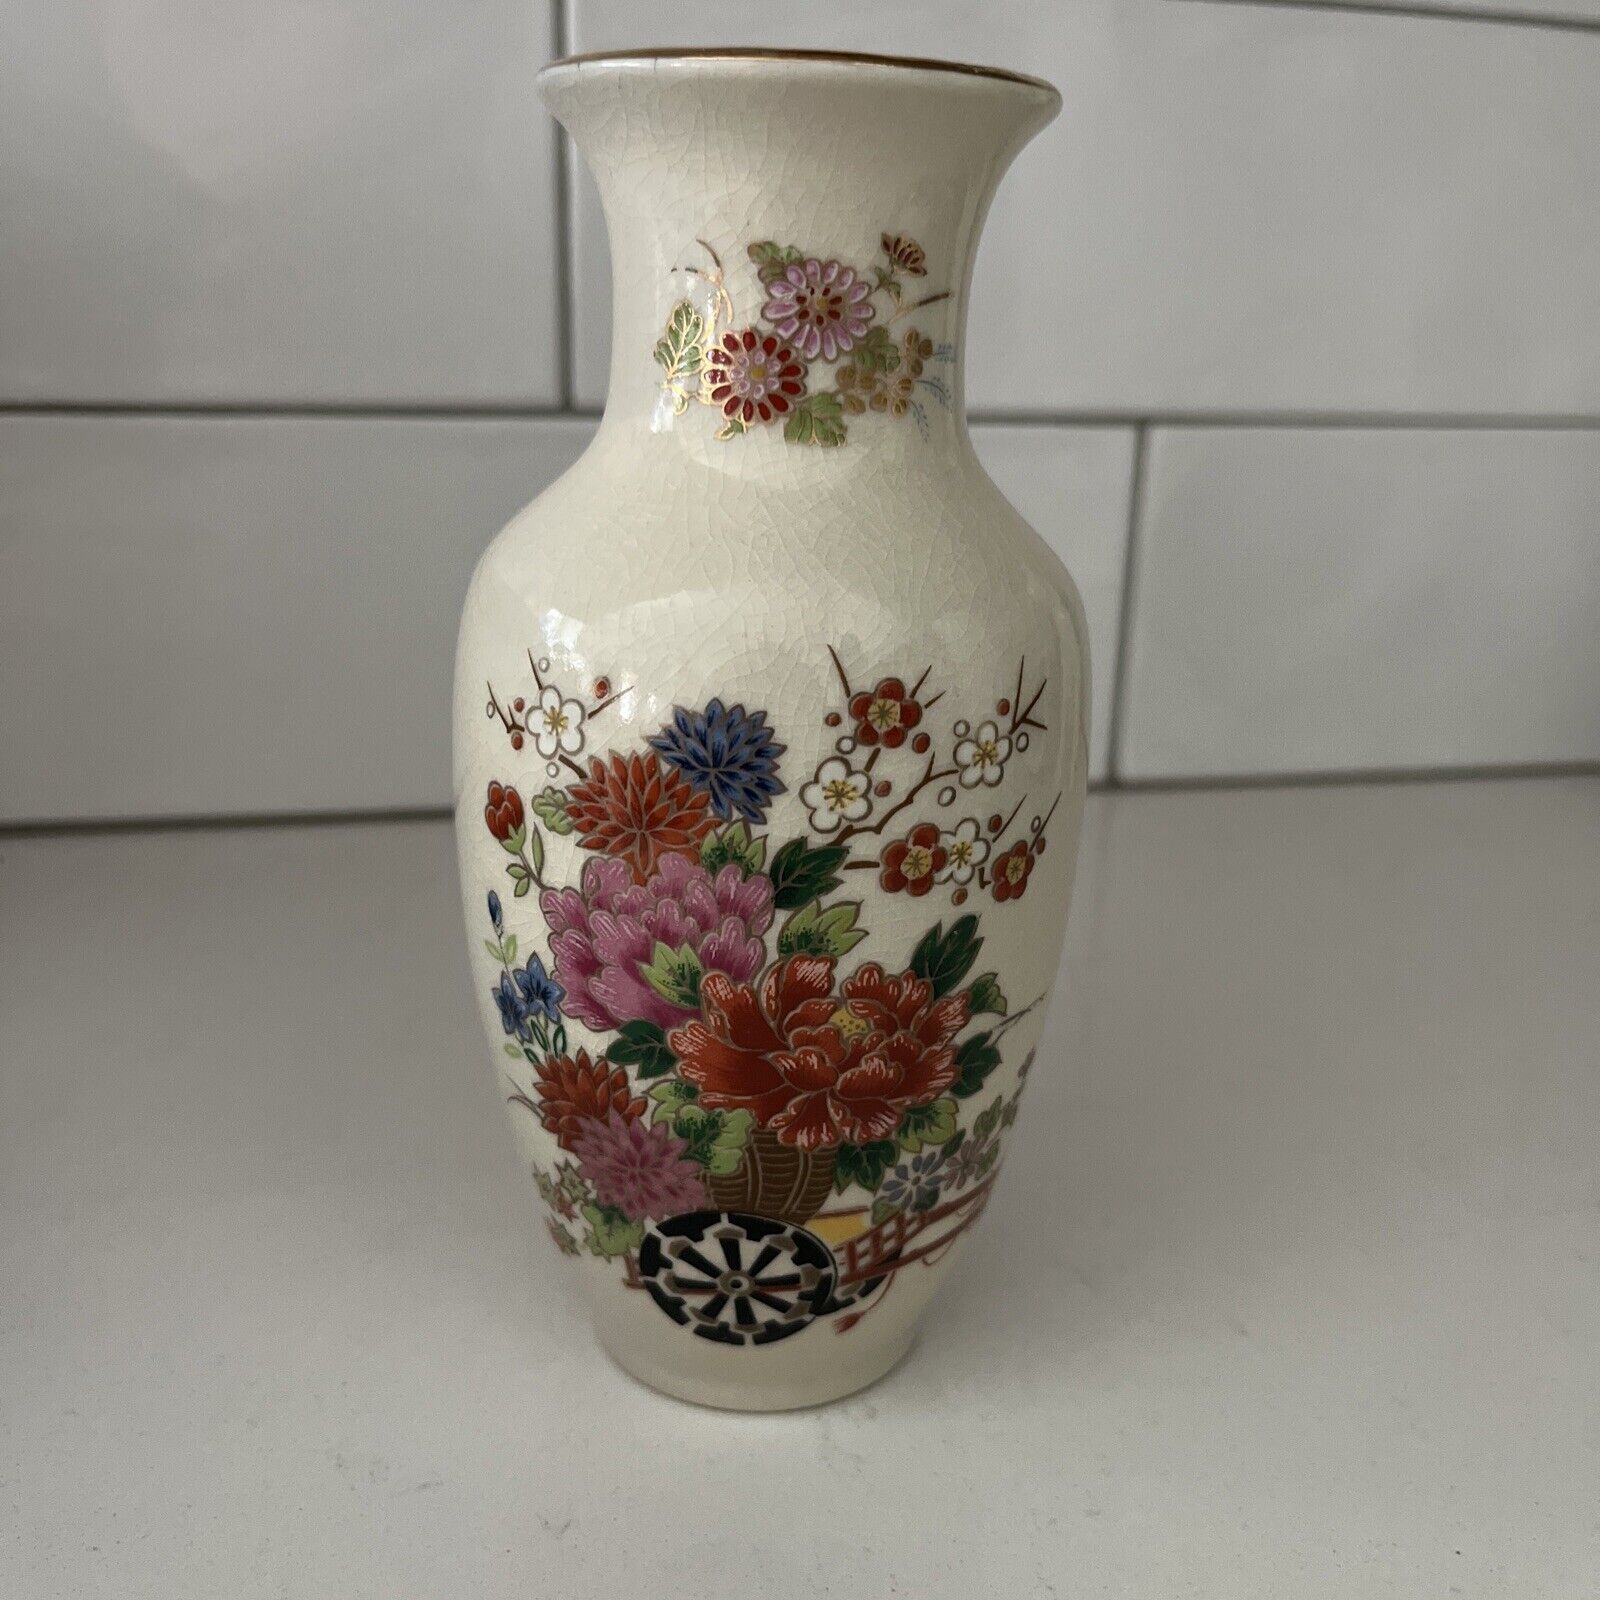 Vintage Japanese Artmark Vase With Floral Design Made In Japan 